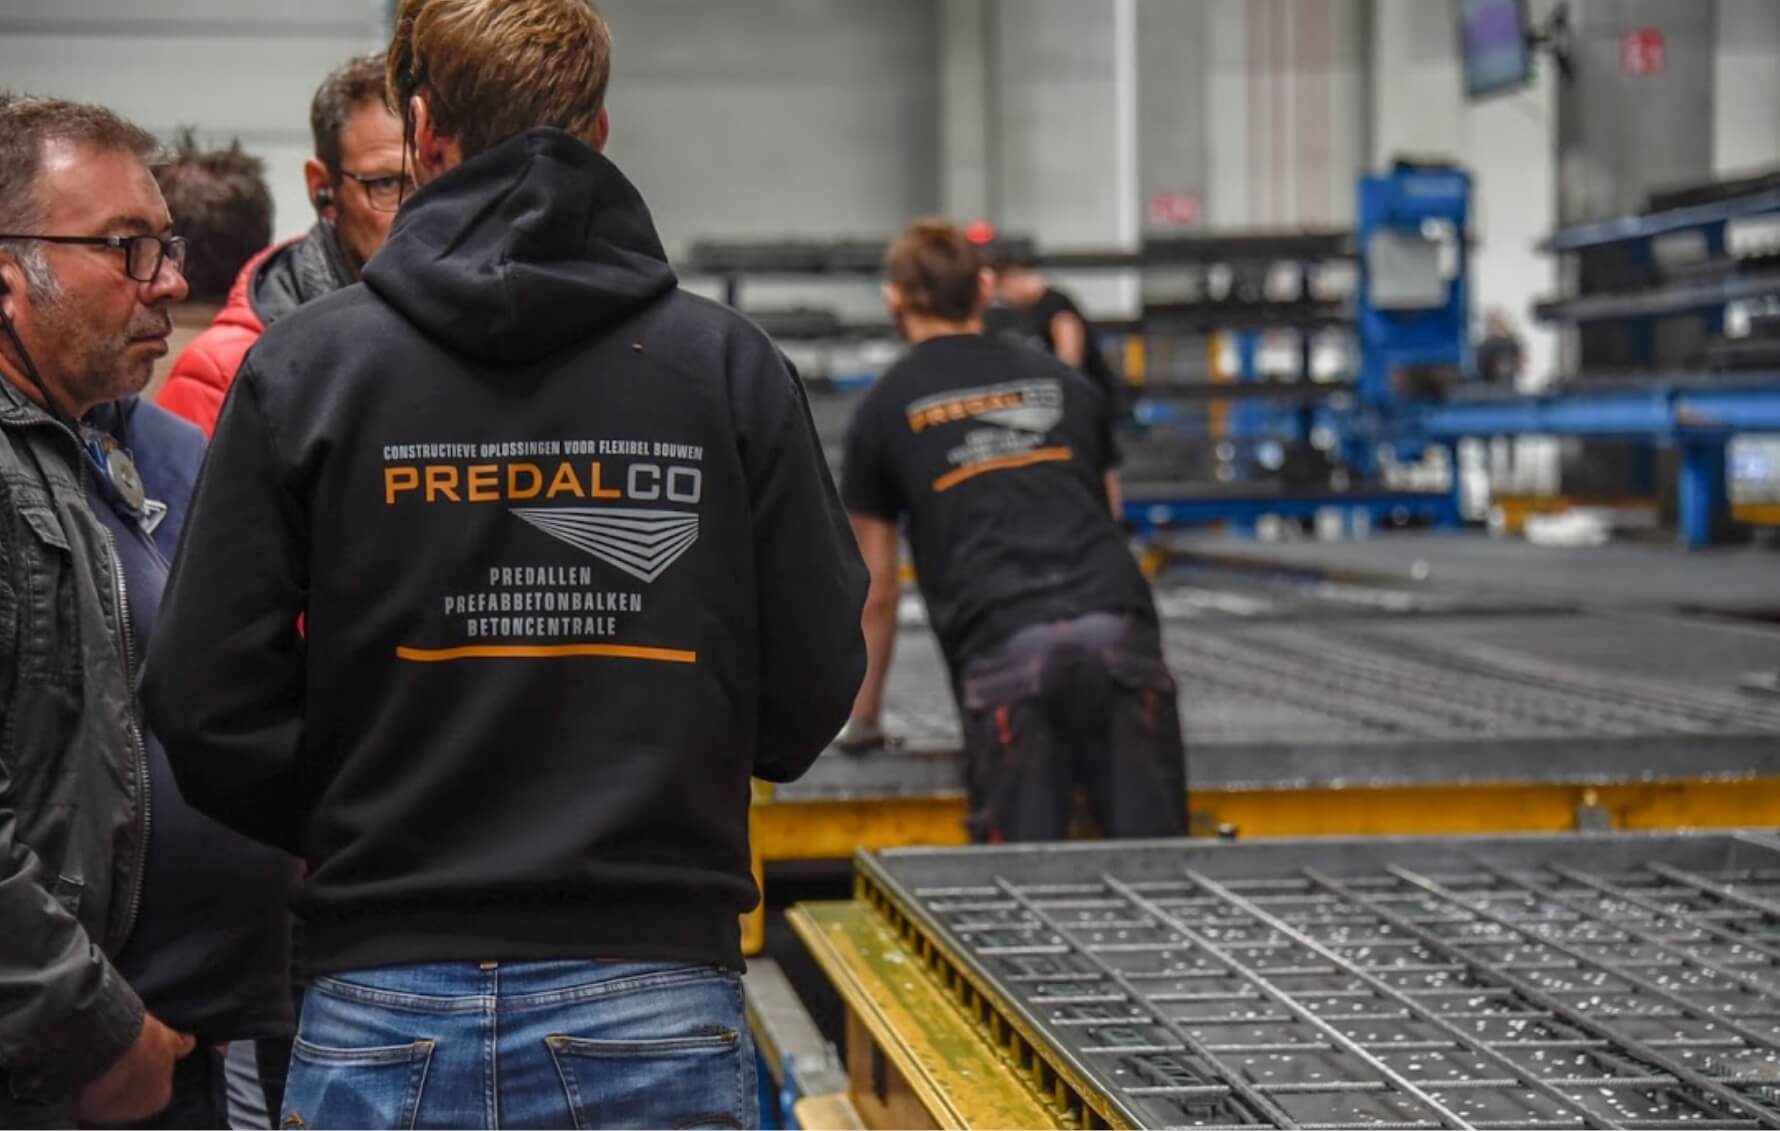 Productiehal Predalco leverancier van predallen, prefabbeton en prefabwapening